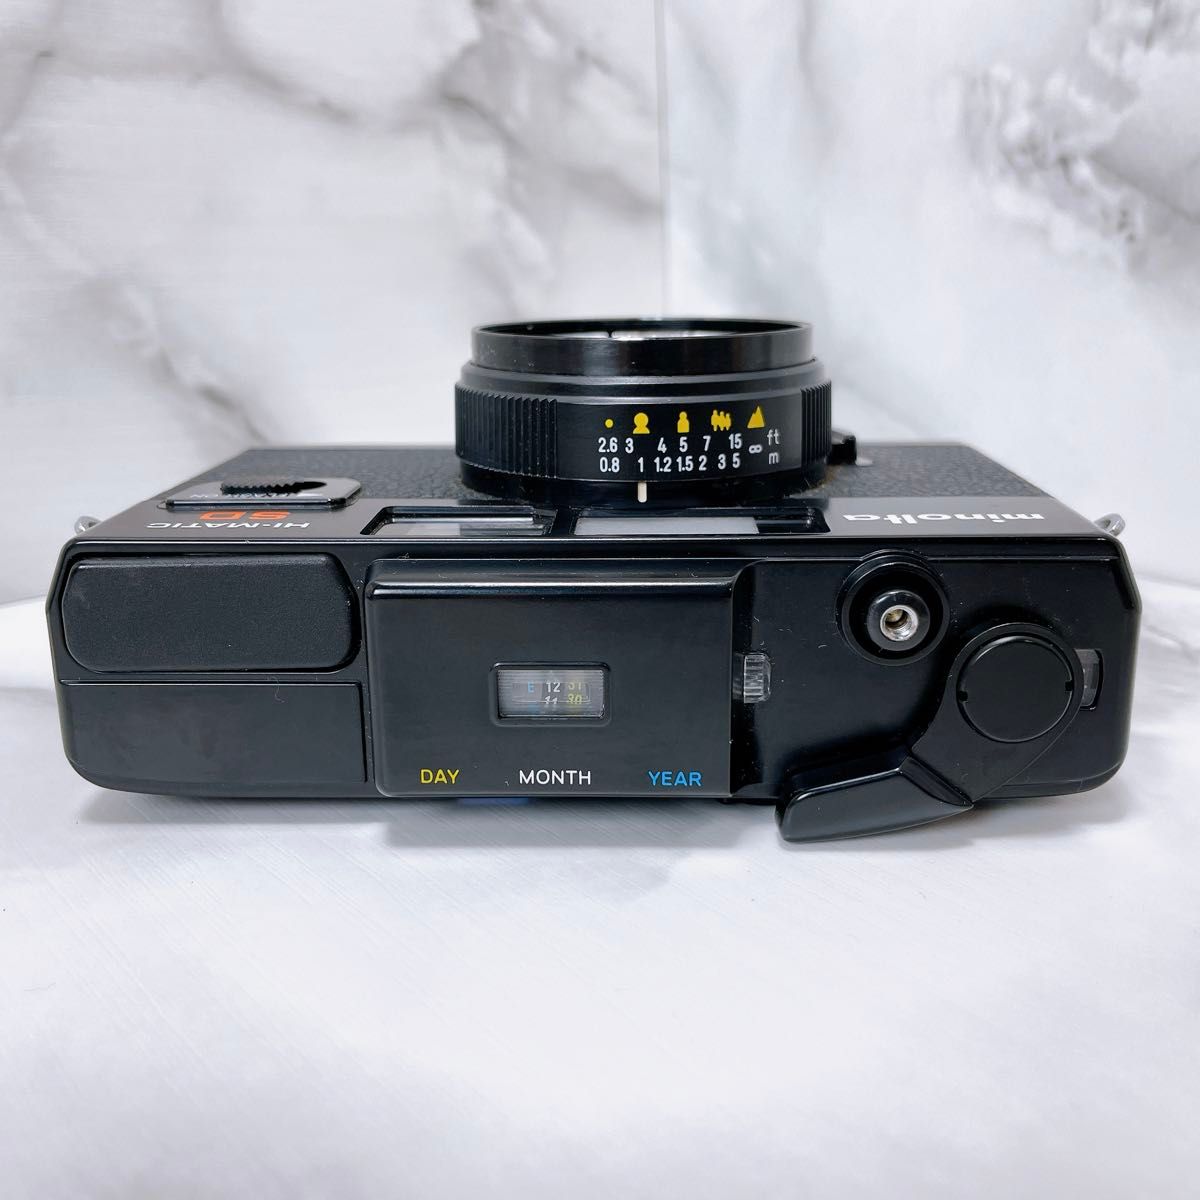 【完動品】MINOLTA ミノルタ HI-MATIC SD フィルムカメラ